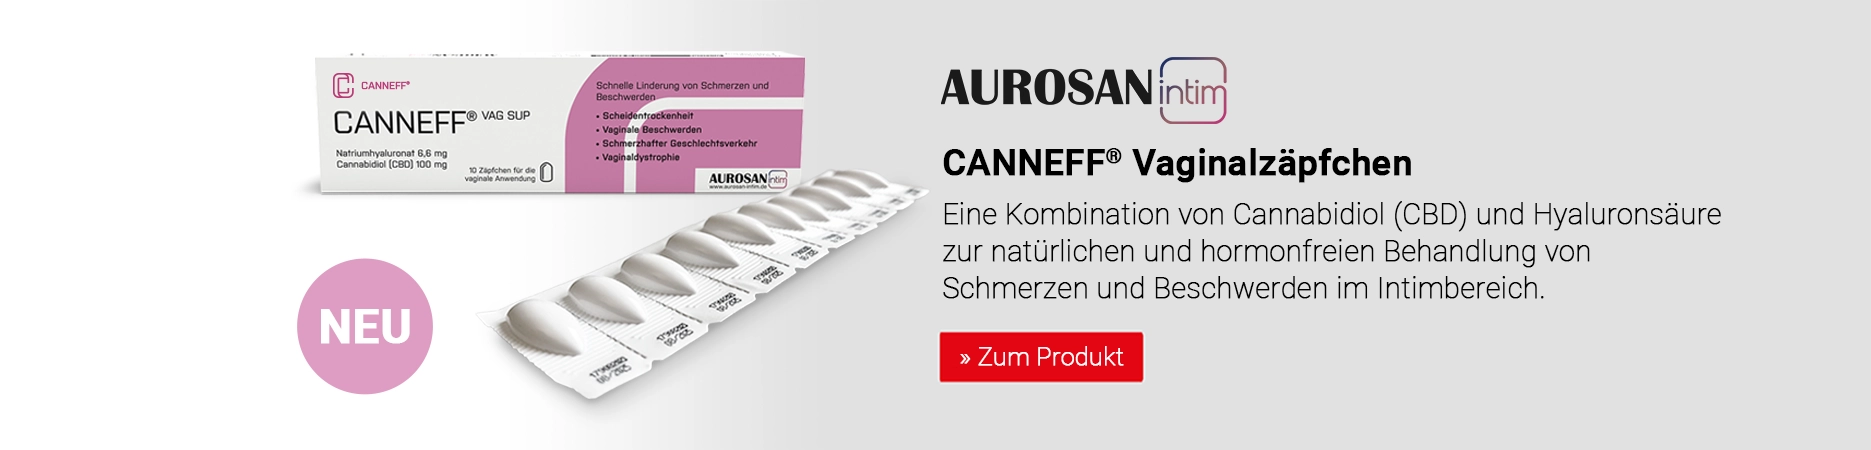 CANNEFF VAG SUP Vaginalzäpfchen mit Cannabidiol (CBD) und Hyaluronsäure